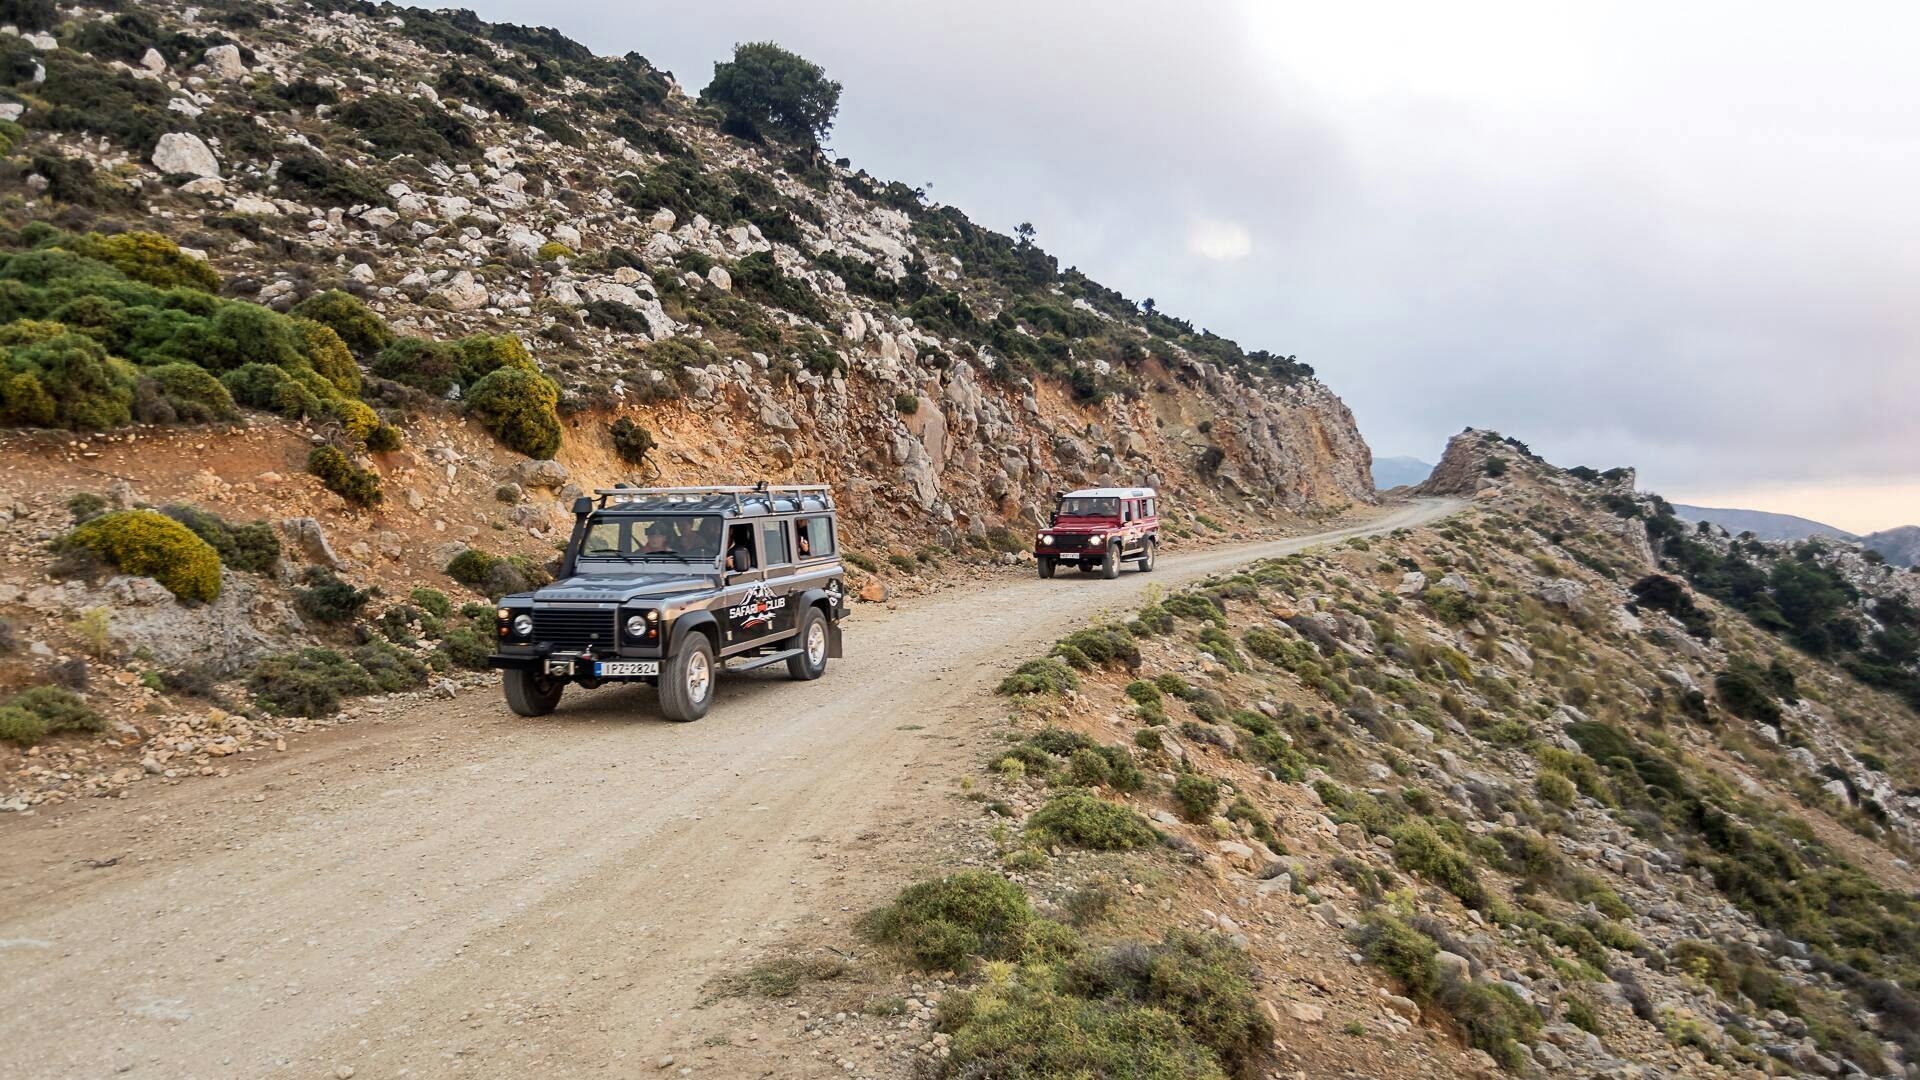 Southern Crete 4x4 Tour with Sarakina Gorge Visit